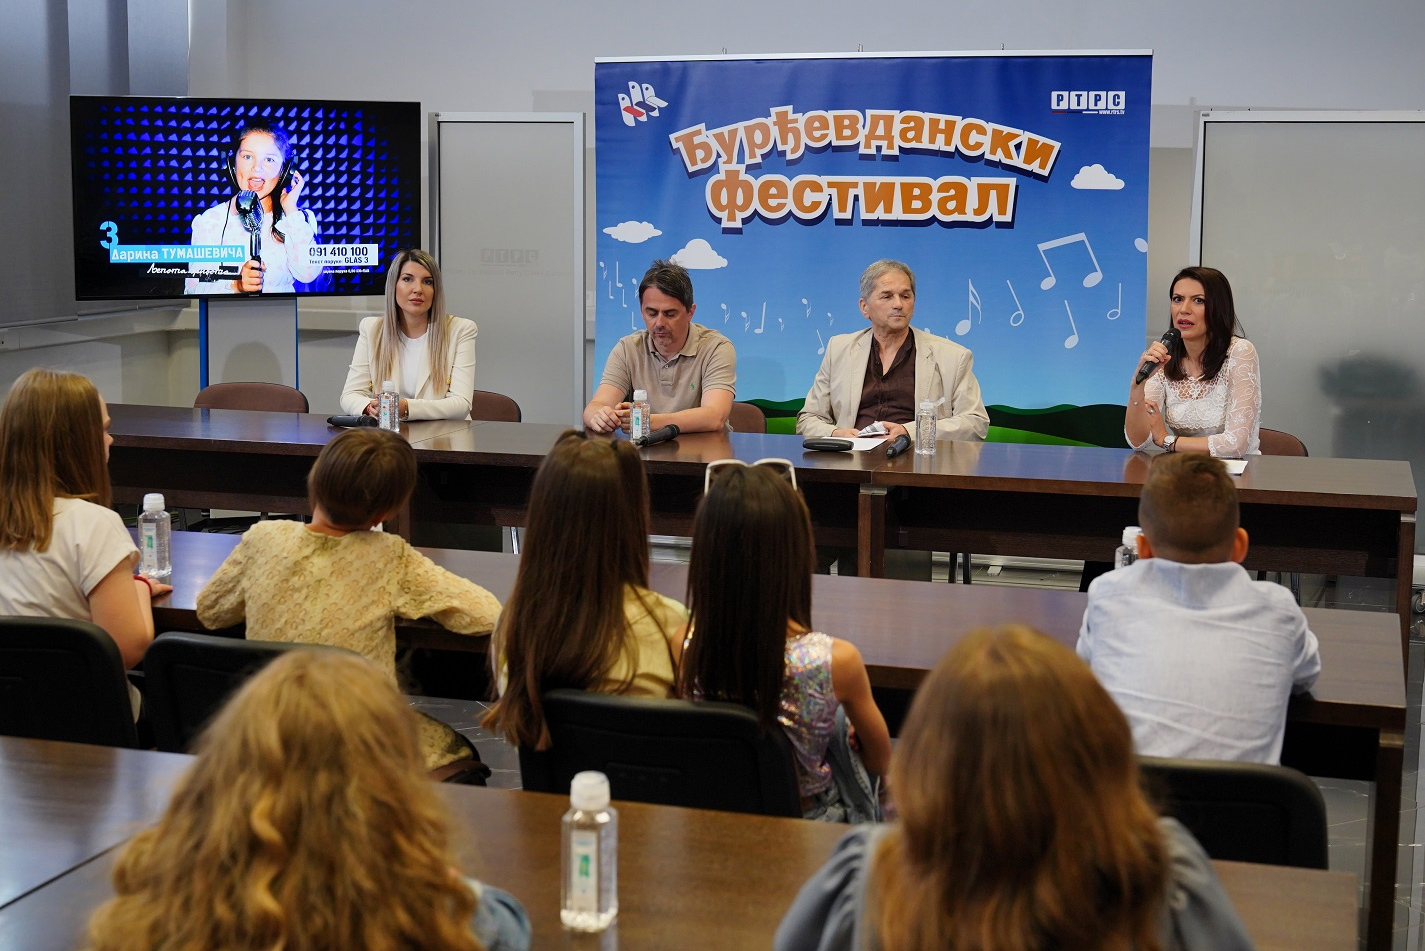 У мултимедијалној сали РТВ дома управо је одржана конференција за медије поводом 28. Ђурђевданског фестивала дјечије пјесме, Бањалука 2022